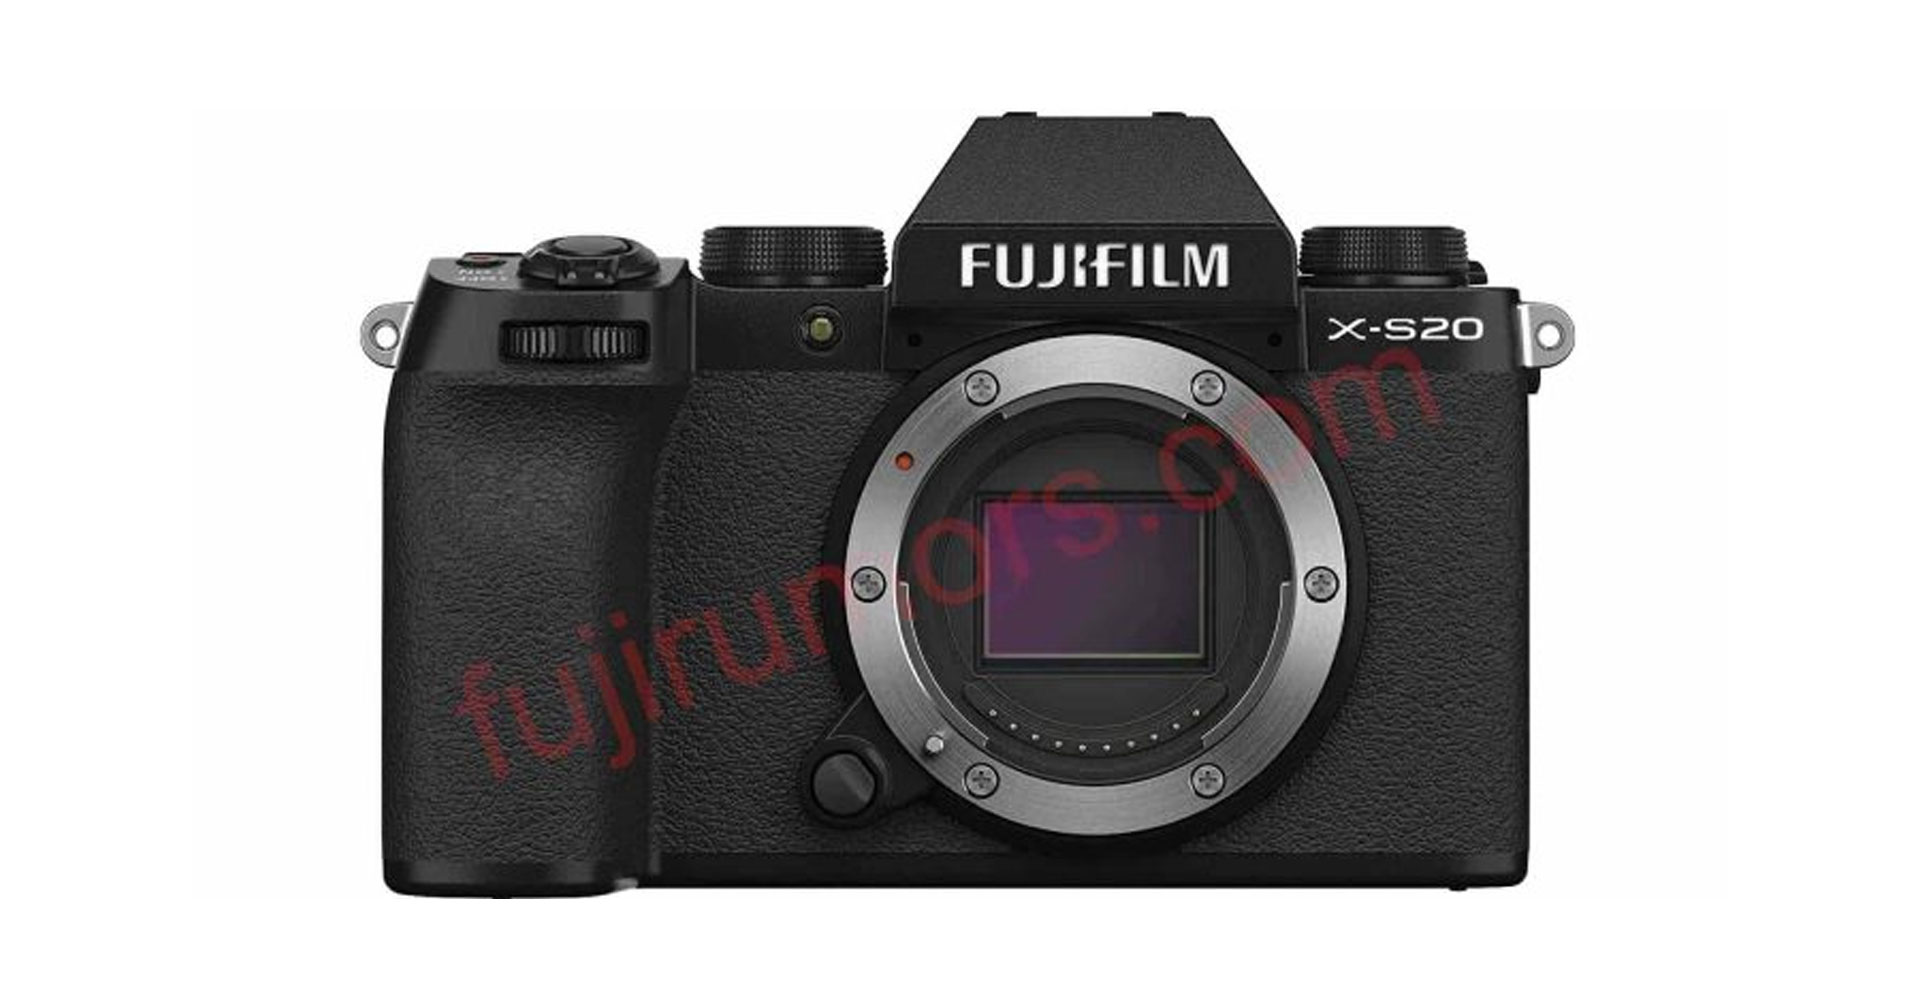 พบ FUJIFILM จดทะเบียนกล้องใหม่ คาดอาจเป็น X-S20 หรือ GFX 100 รุ่นใหม่ที่ลือกัน